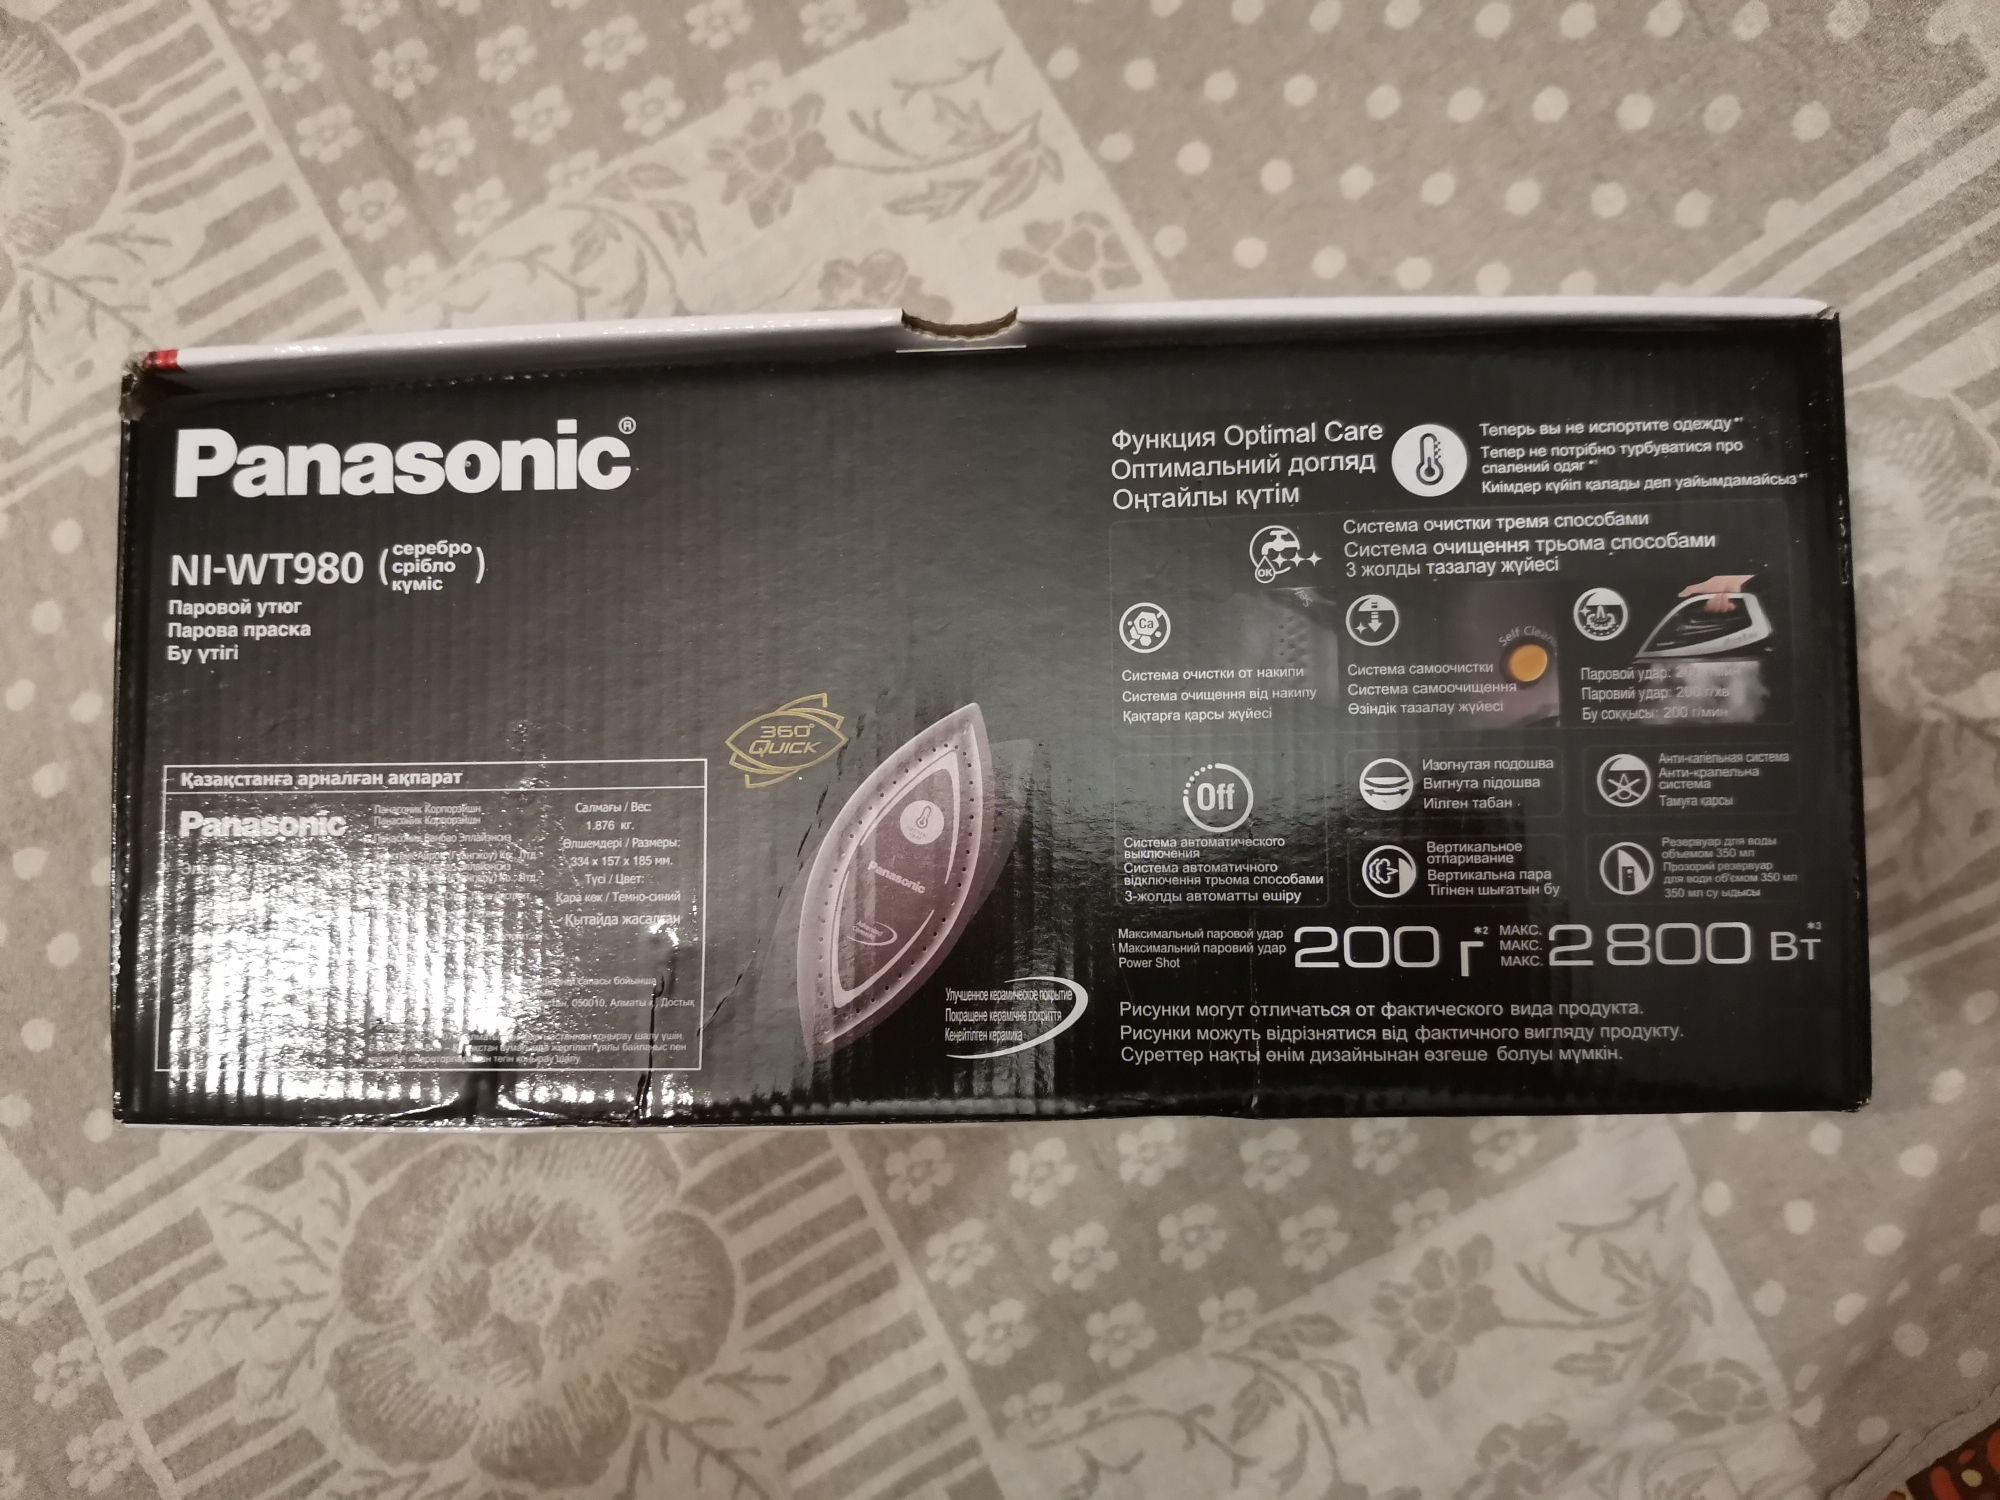 Праска Panasonic NI-WT980 срібляста.